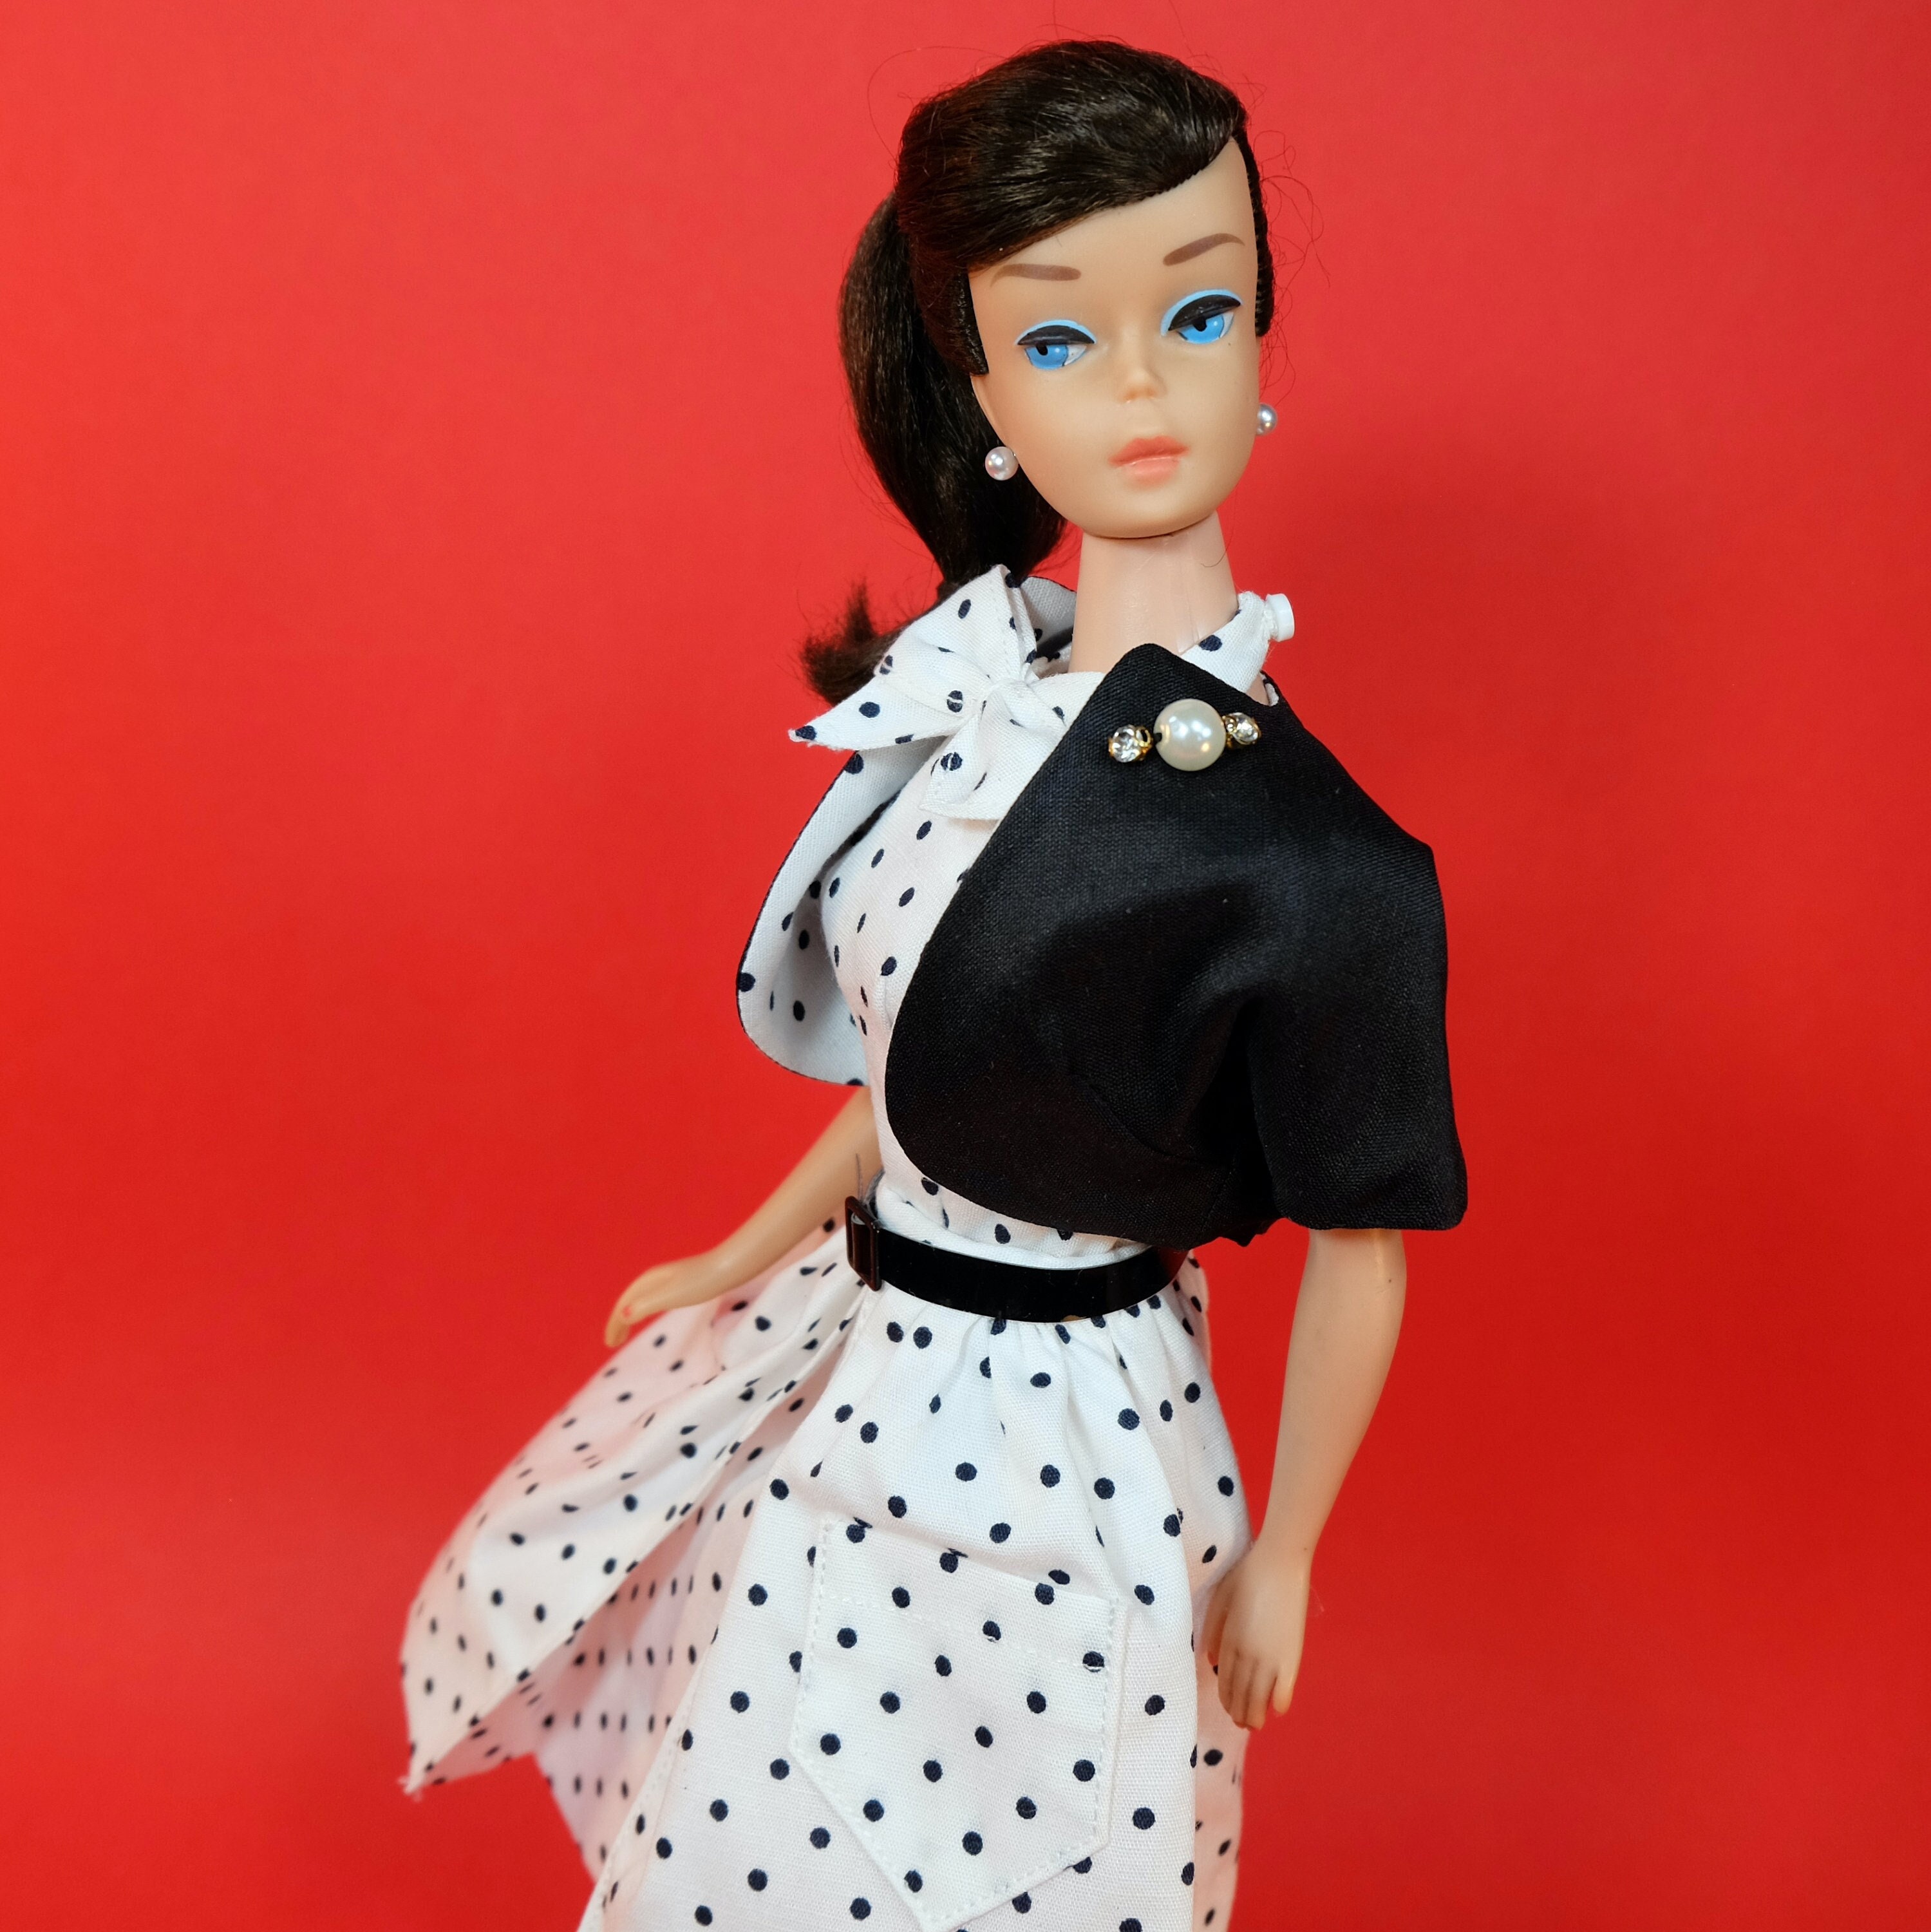 Black Barbie Doll Black & White Polka Dot Dress Red Ribbon Earrings